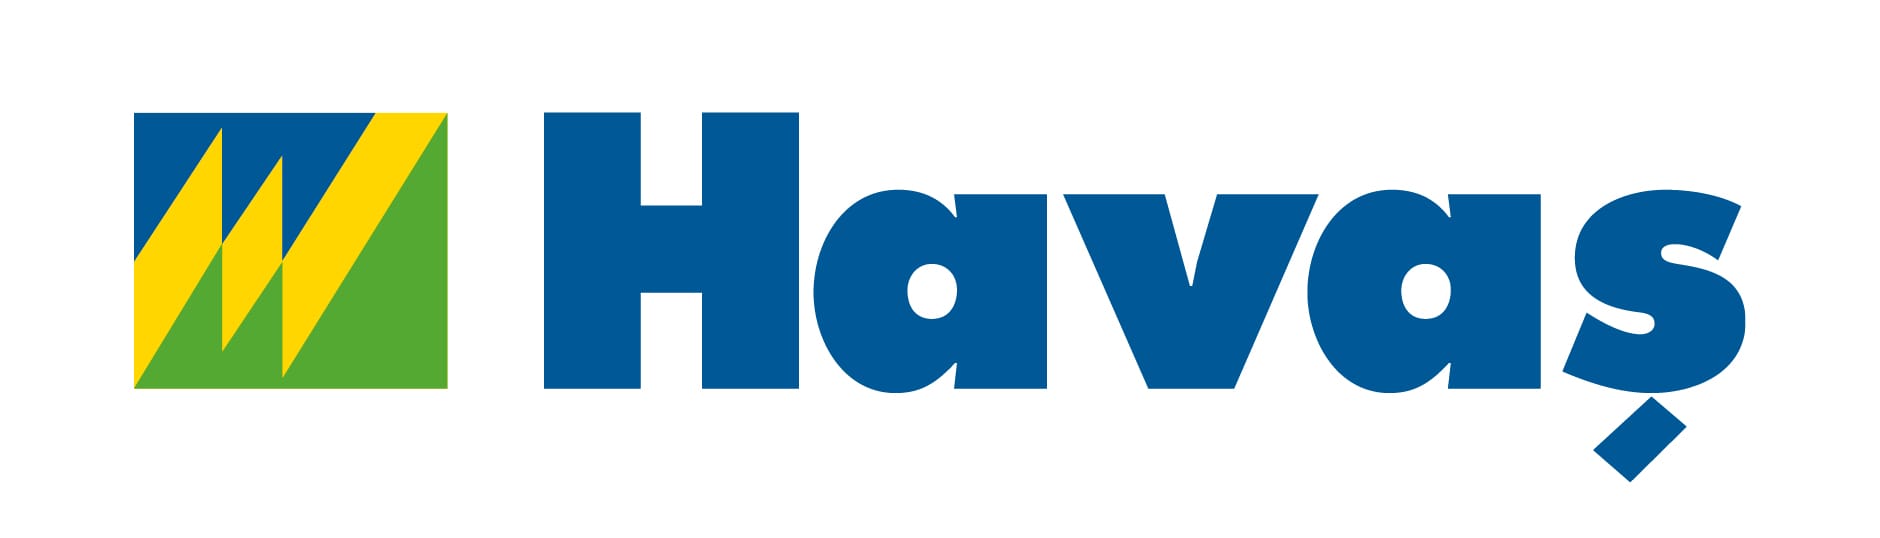 Logo Havas